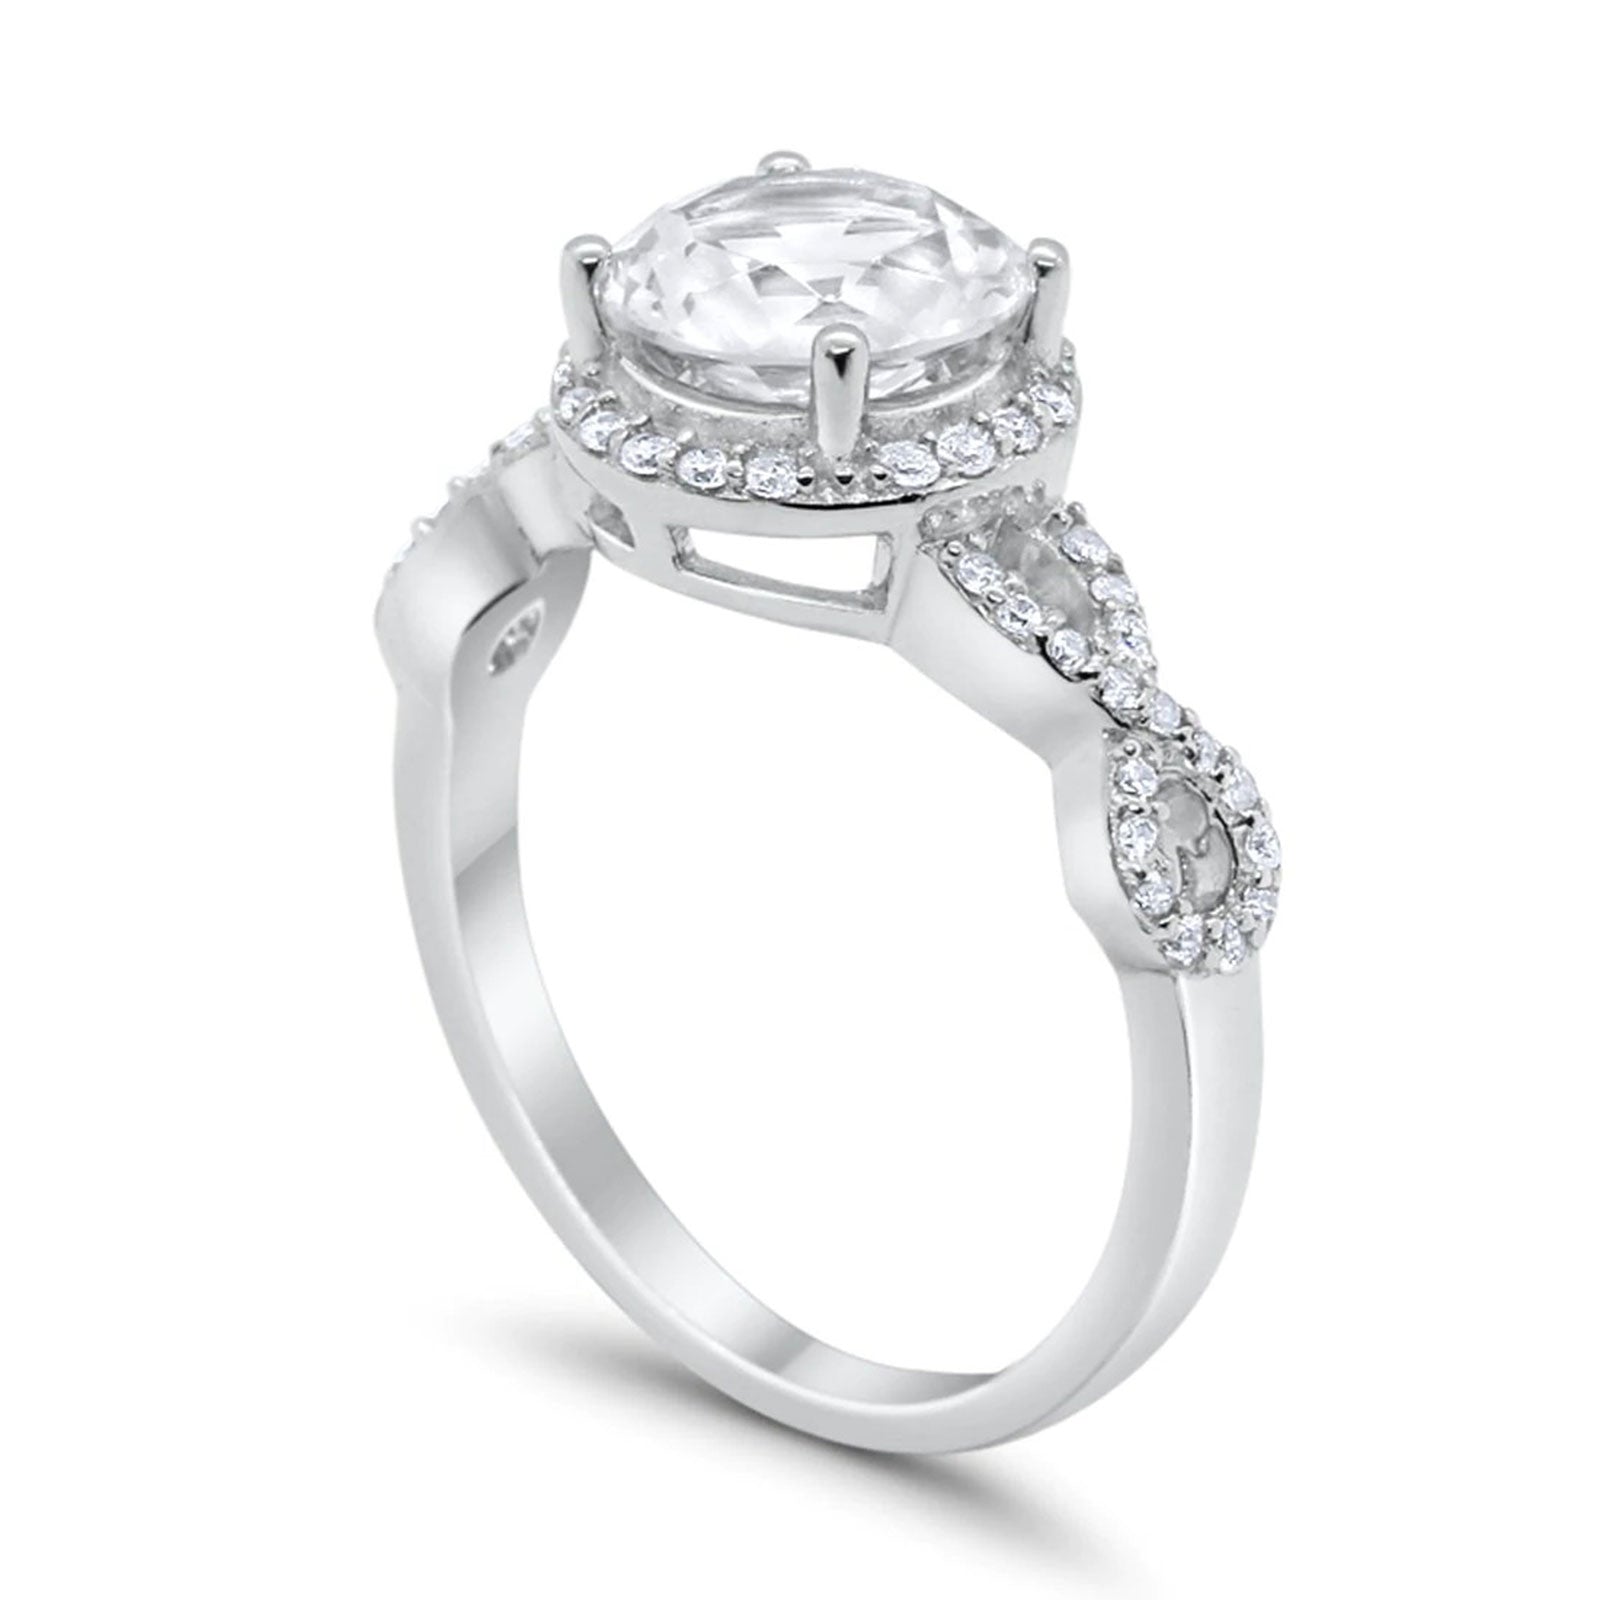 14K Gold Halo Infinity Round Shape Bridal Simulated Cubic Zirconia Wedding Engagement Ring